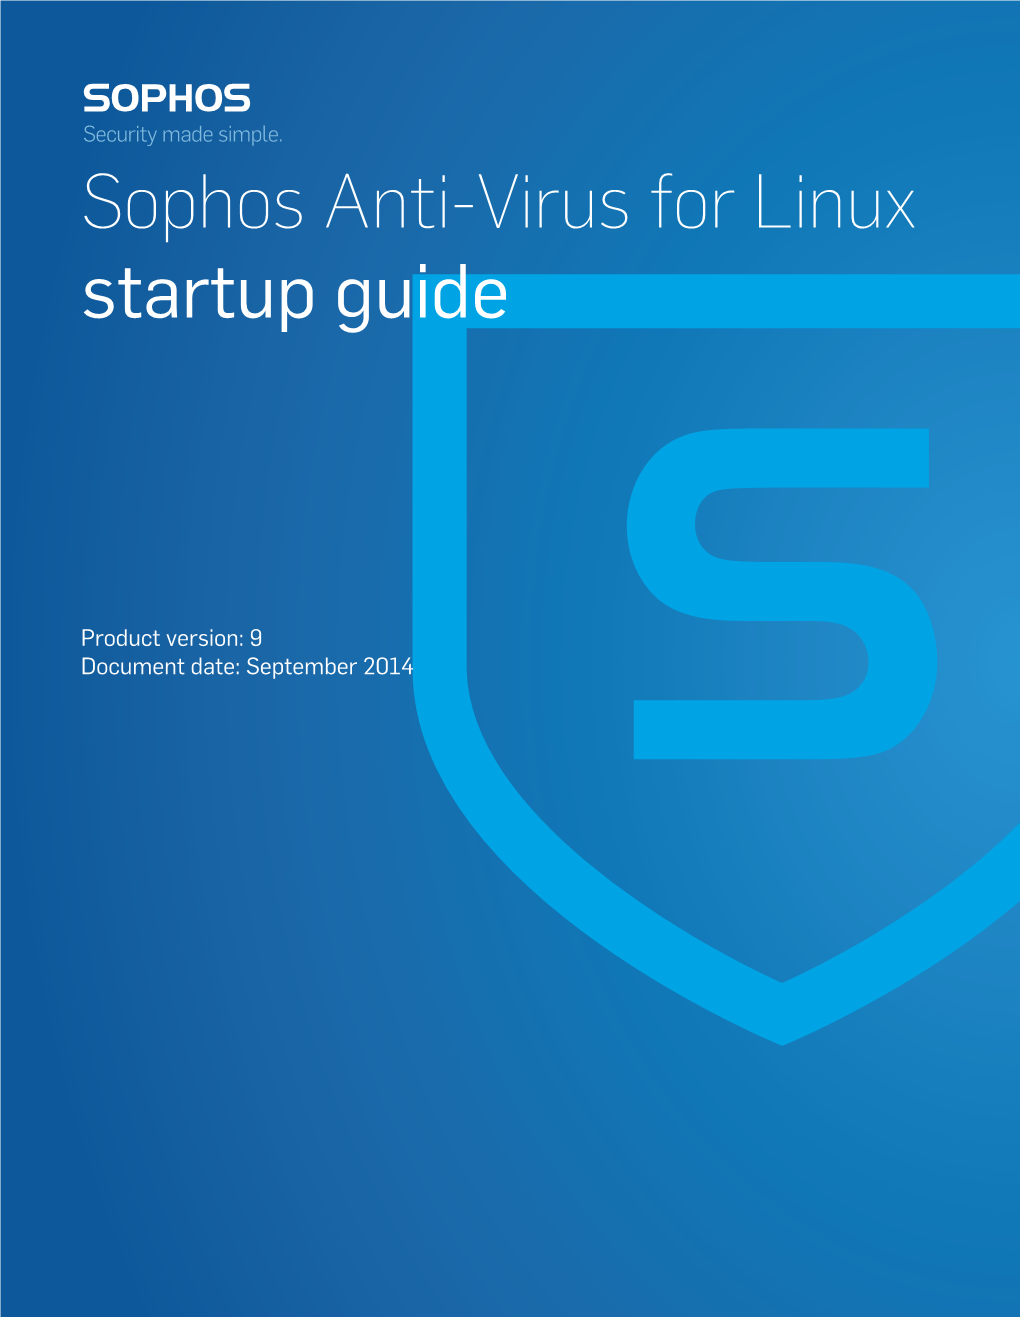 Sophos Anti-Virus for Linux Startup Guide